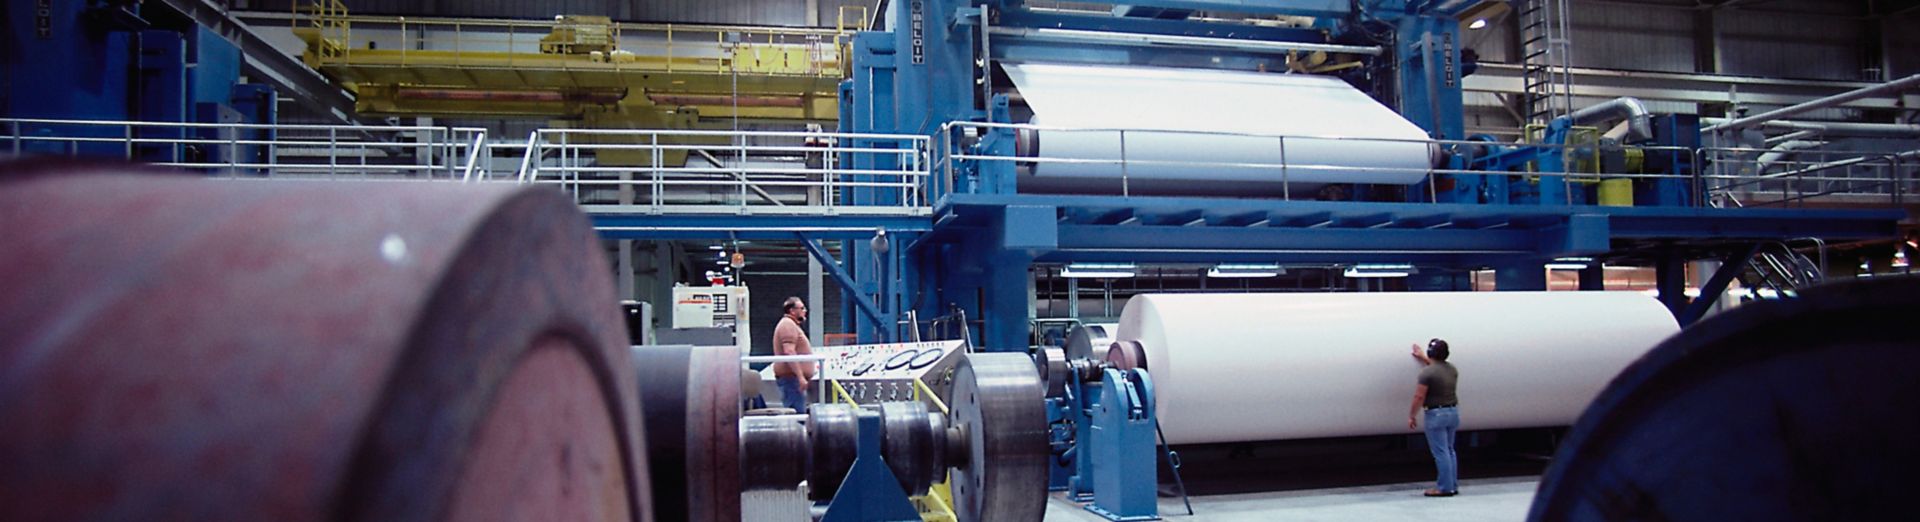 最新の製紙工場で紙生産を見守る技術者 